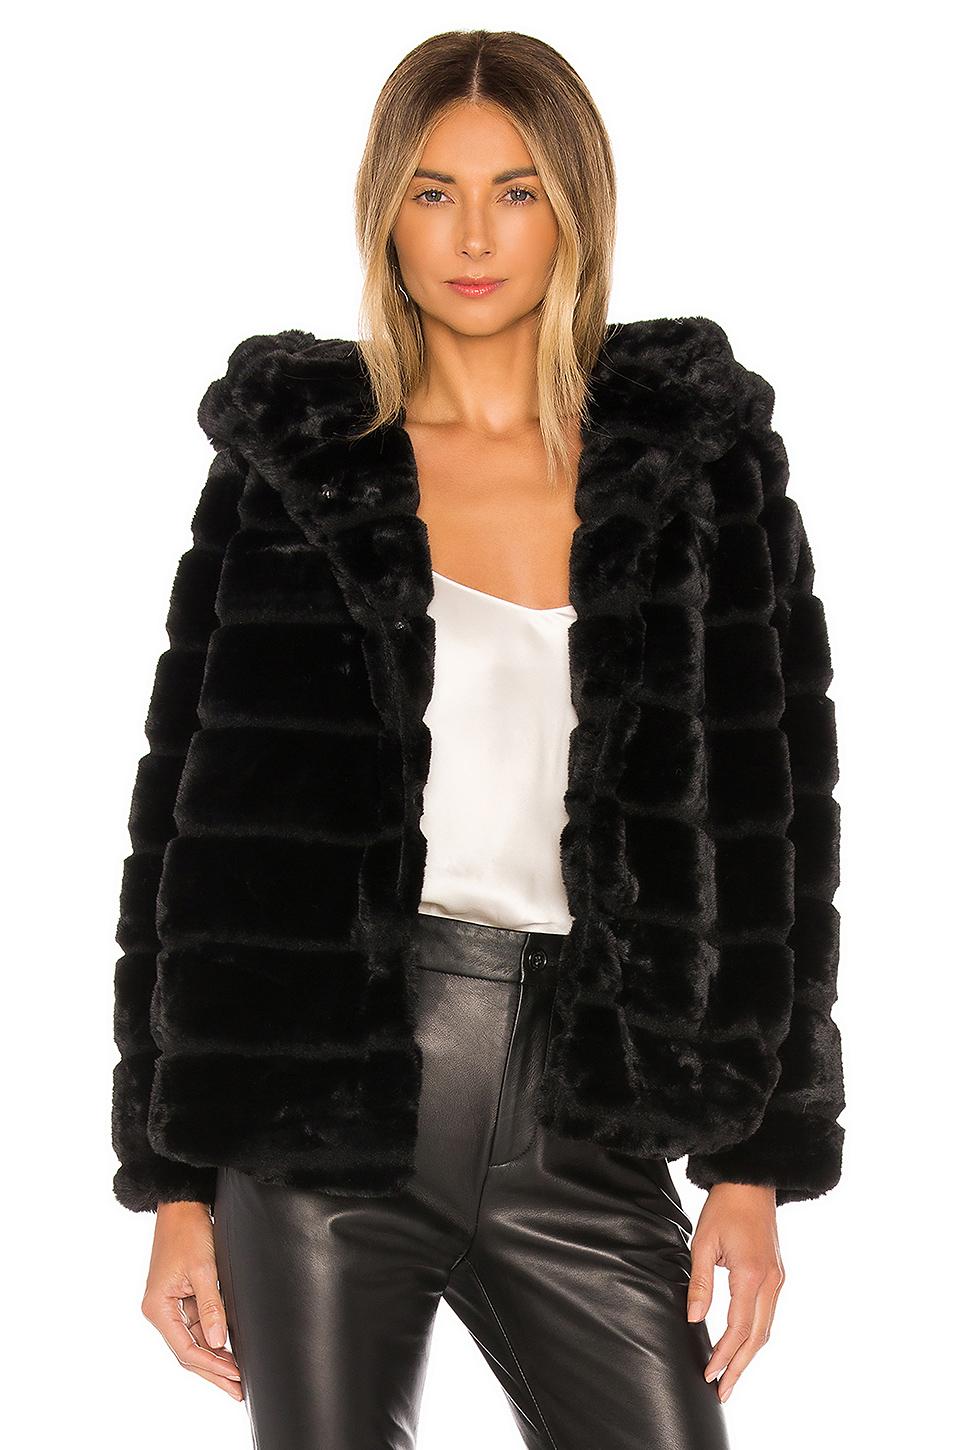 Apparis Goldie 3 Hooded Faux Fur Coat in Black - Save 70% - Lyst